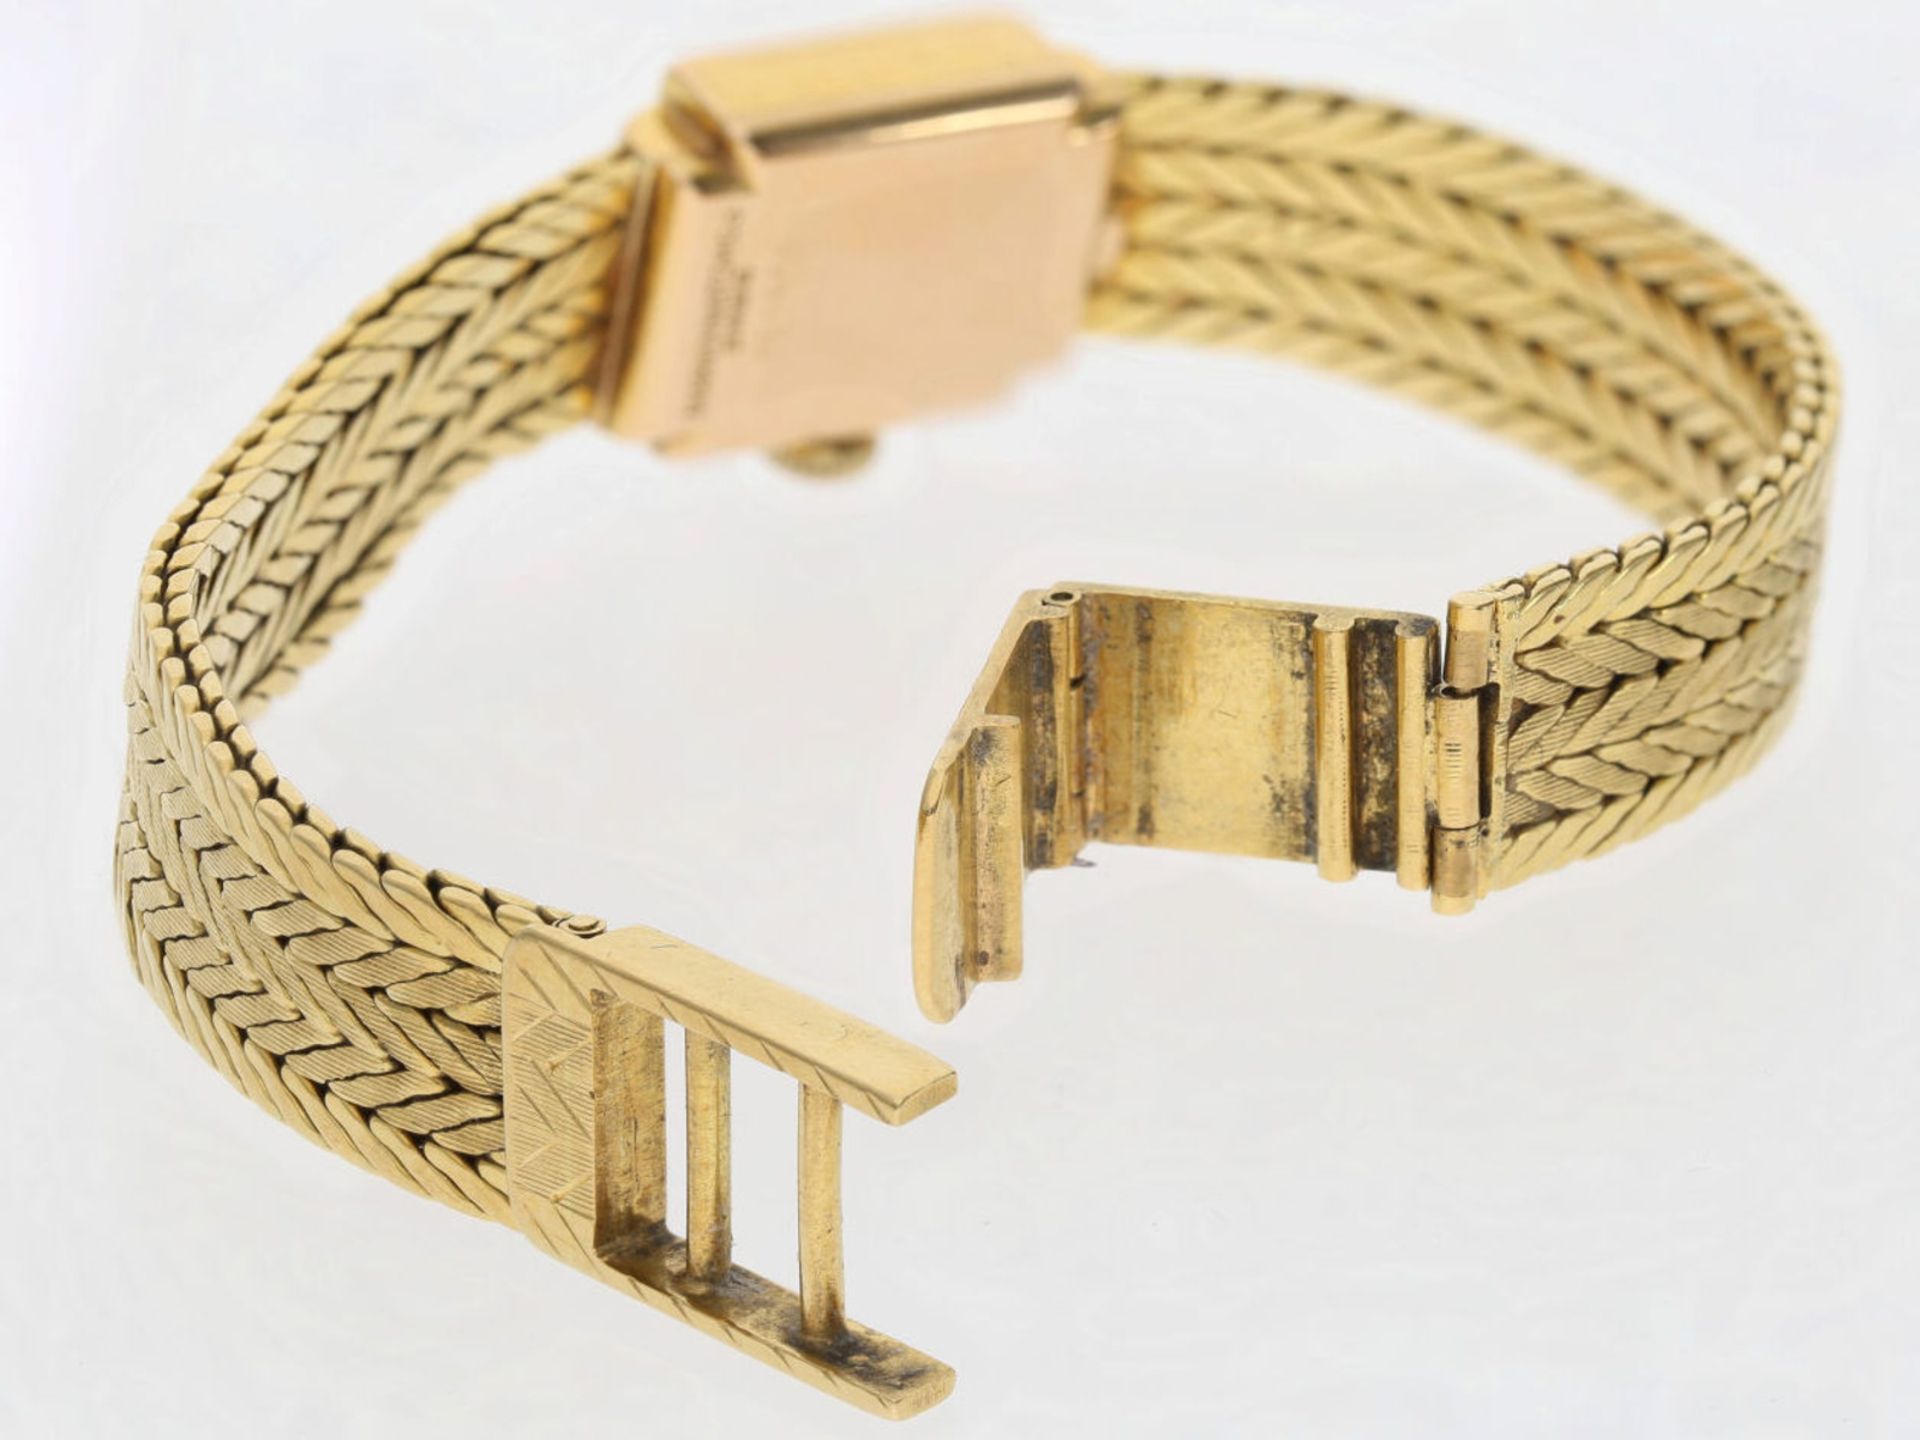 Armbanduhr: vintage Damenuhr aus 18K Gelbgold, Zifferblatt signiert "Marvin" - Bild 4 aus 4